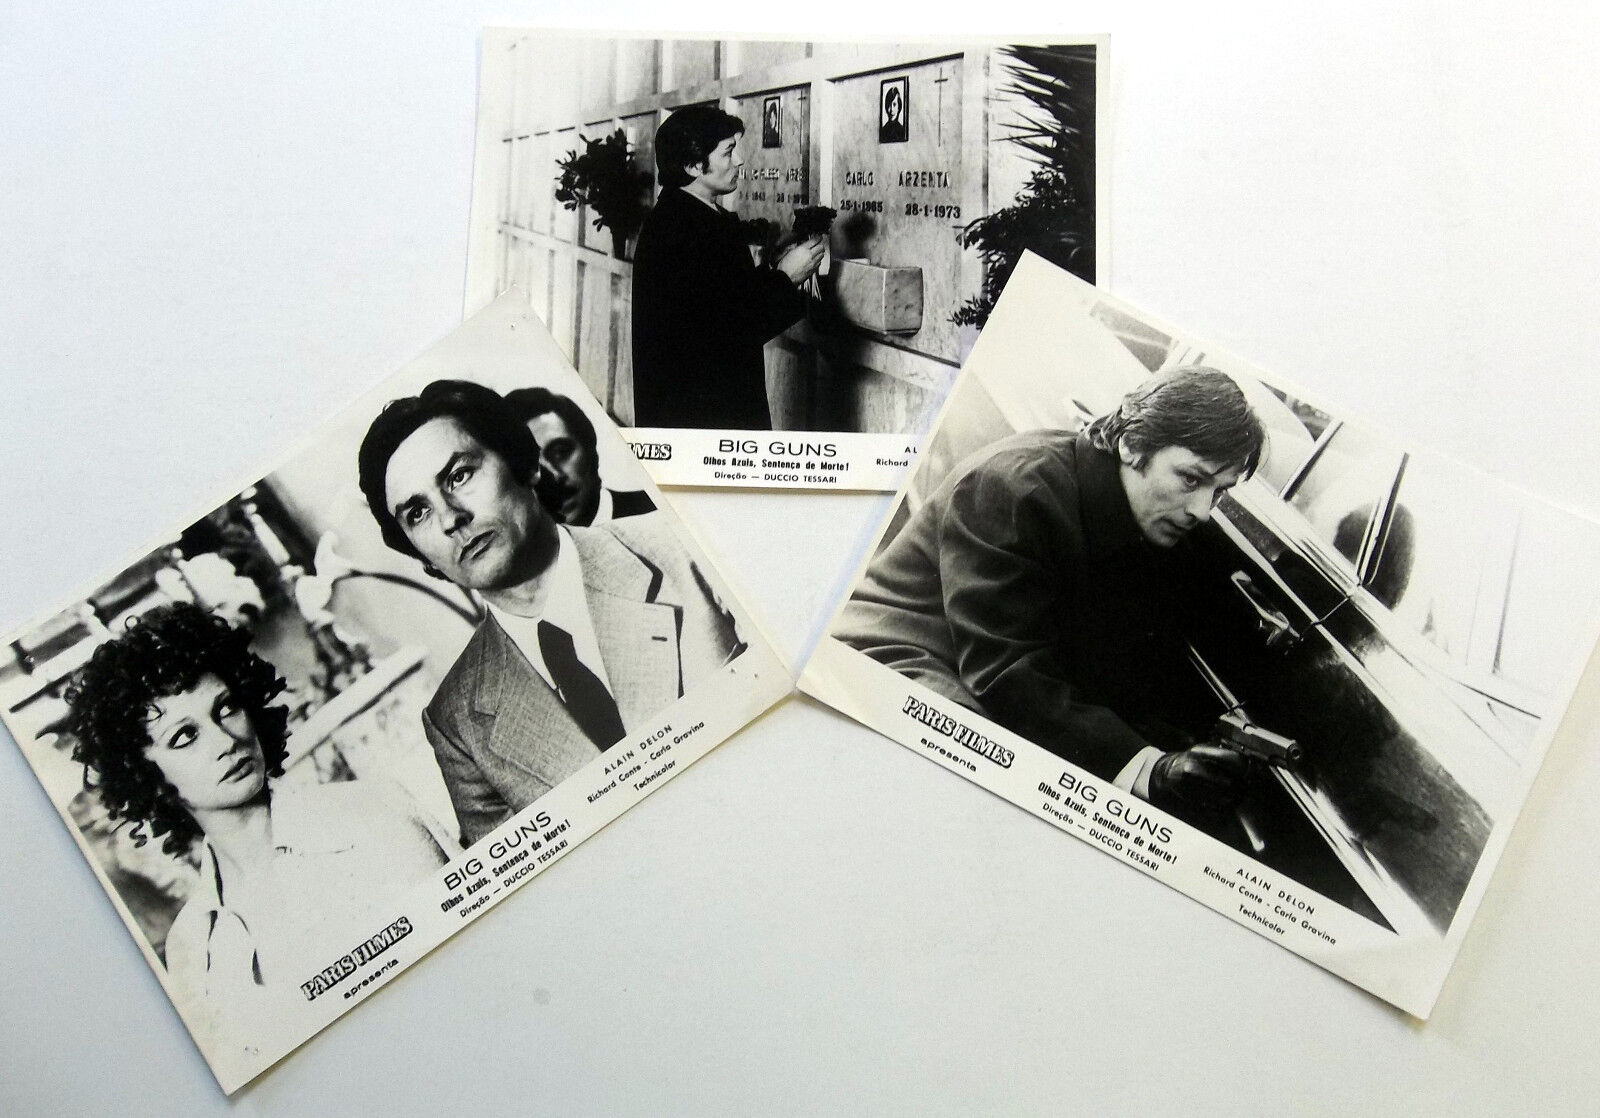 BIG GUNS (Tony Arzenta) B&W 8 x 10 Import Film Stills Lot Of 3 Alain DELON 1973